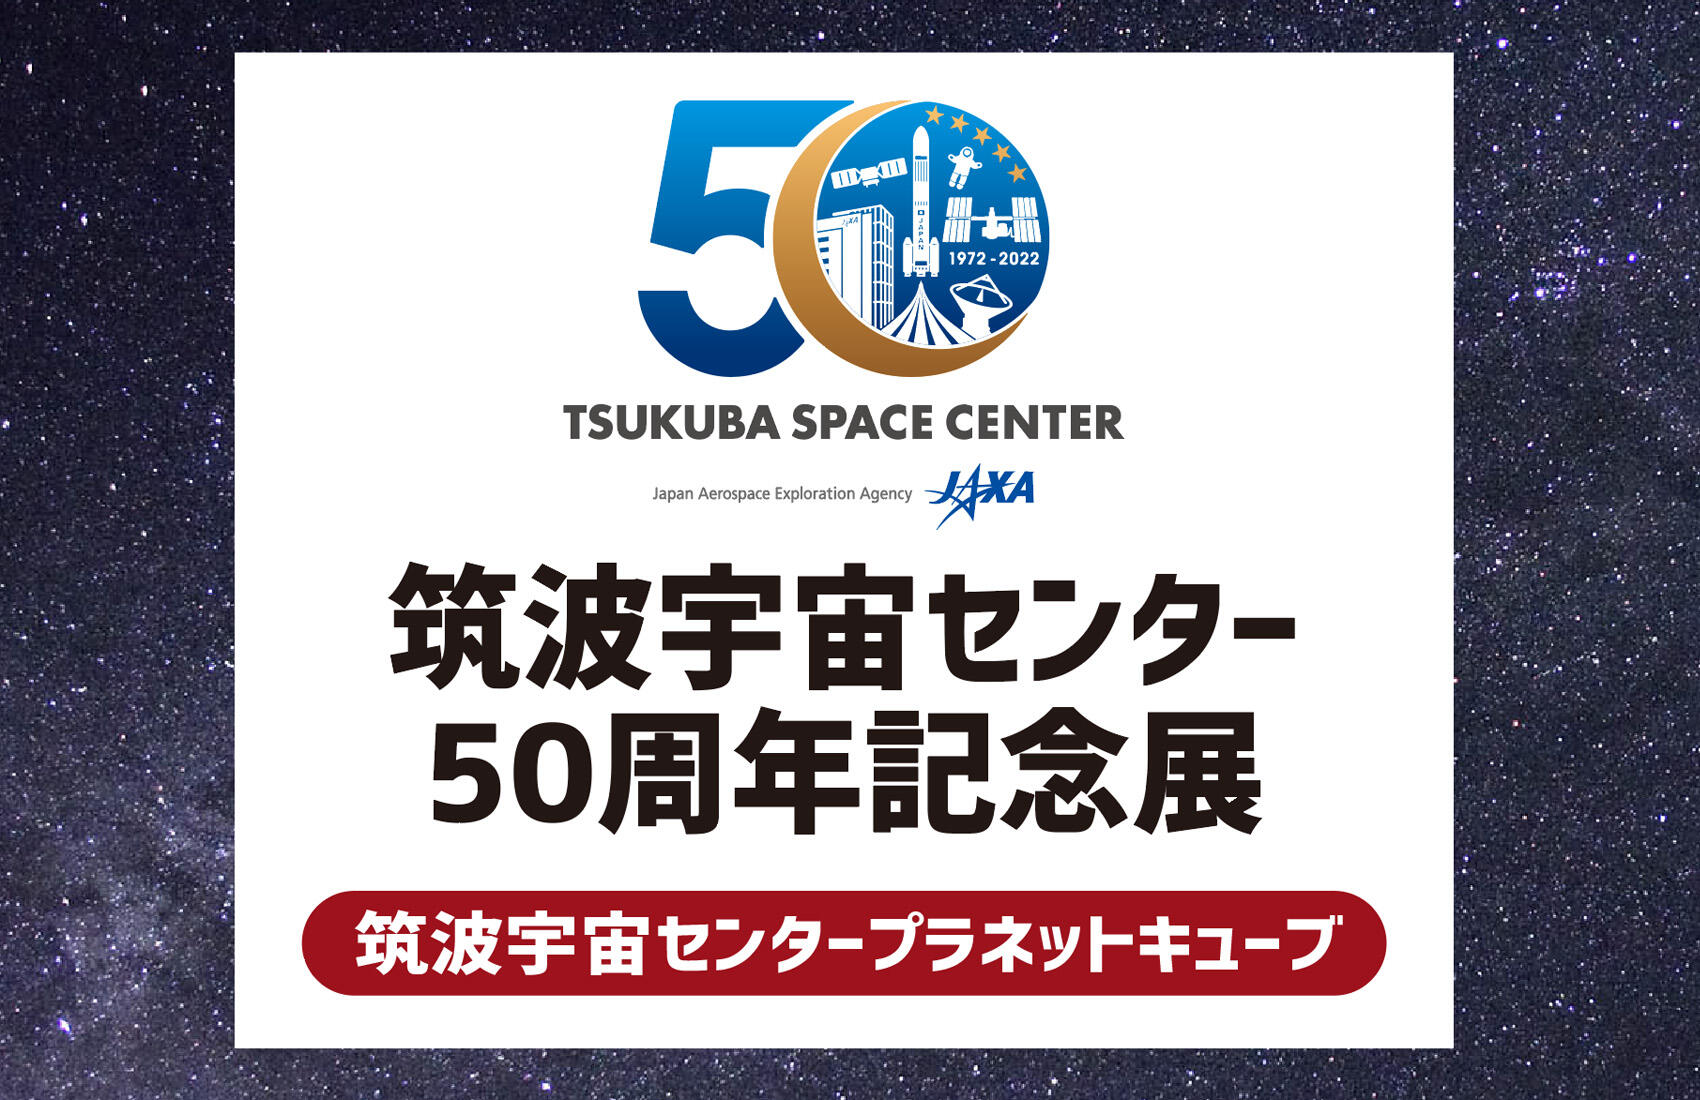 「筑波宇宙センター50周年記念展」開催のお知らせ